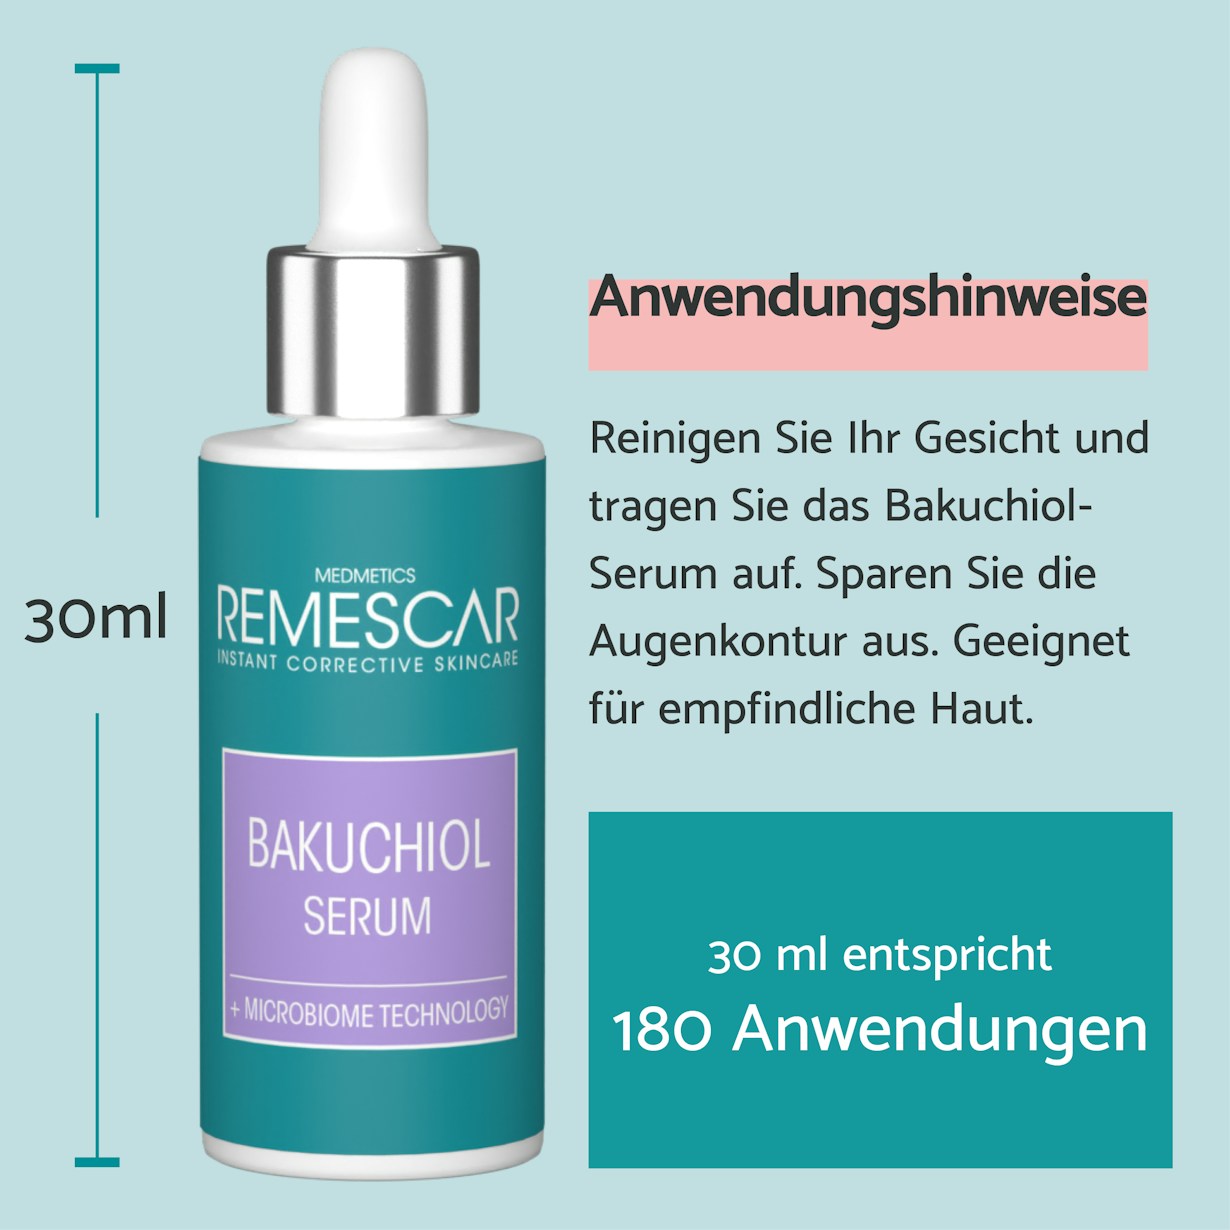 DE Backuchiol Serum Product Images4